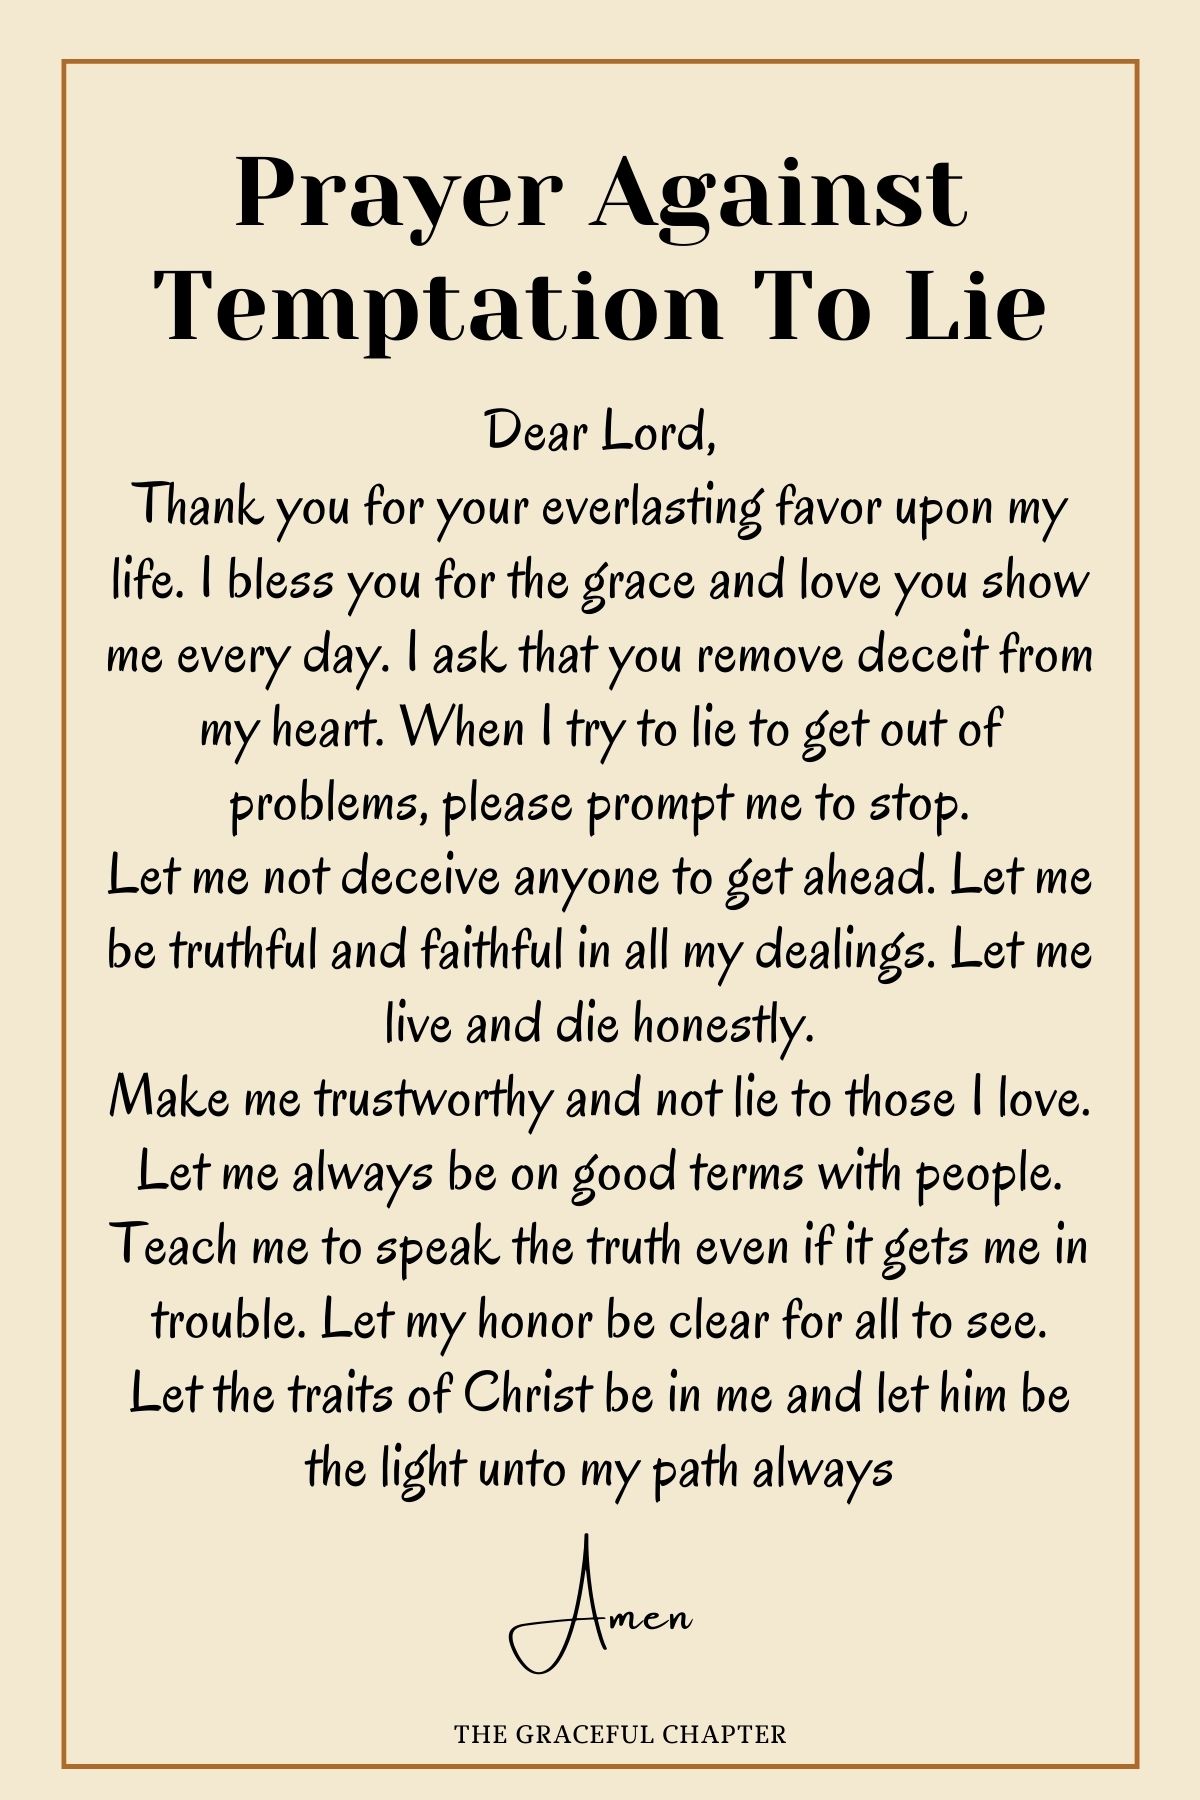 Prayer against temptation to lie